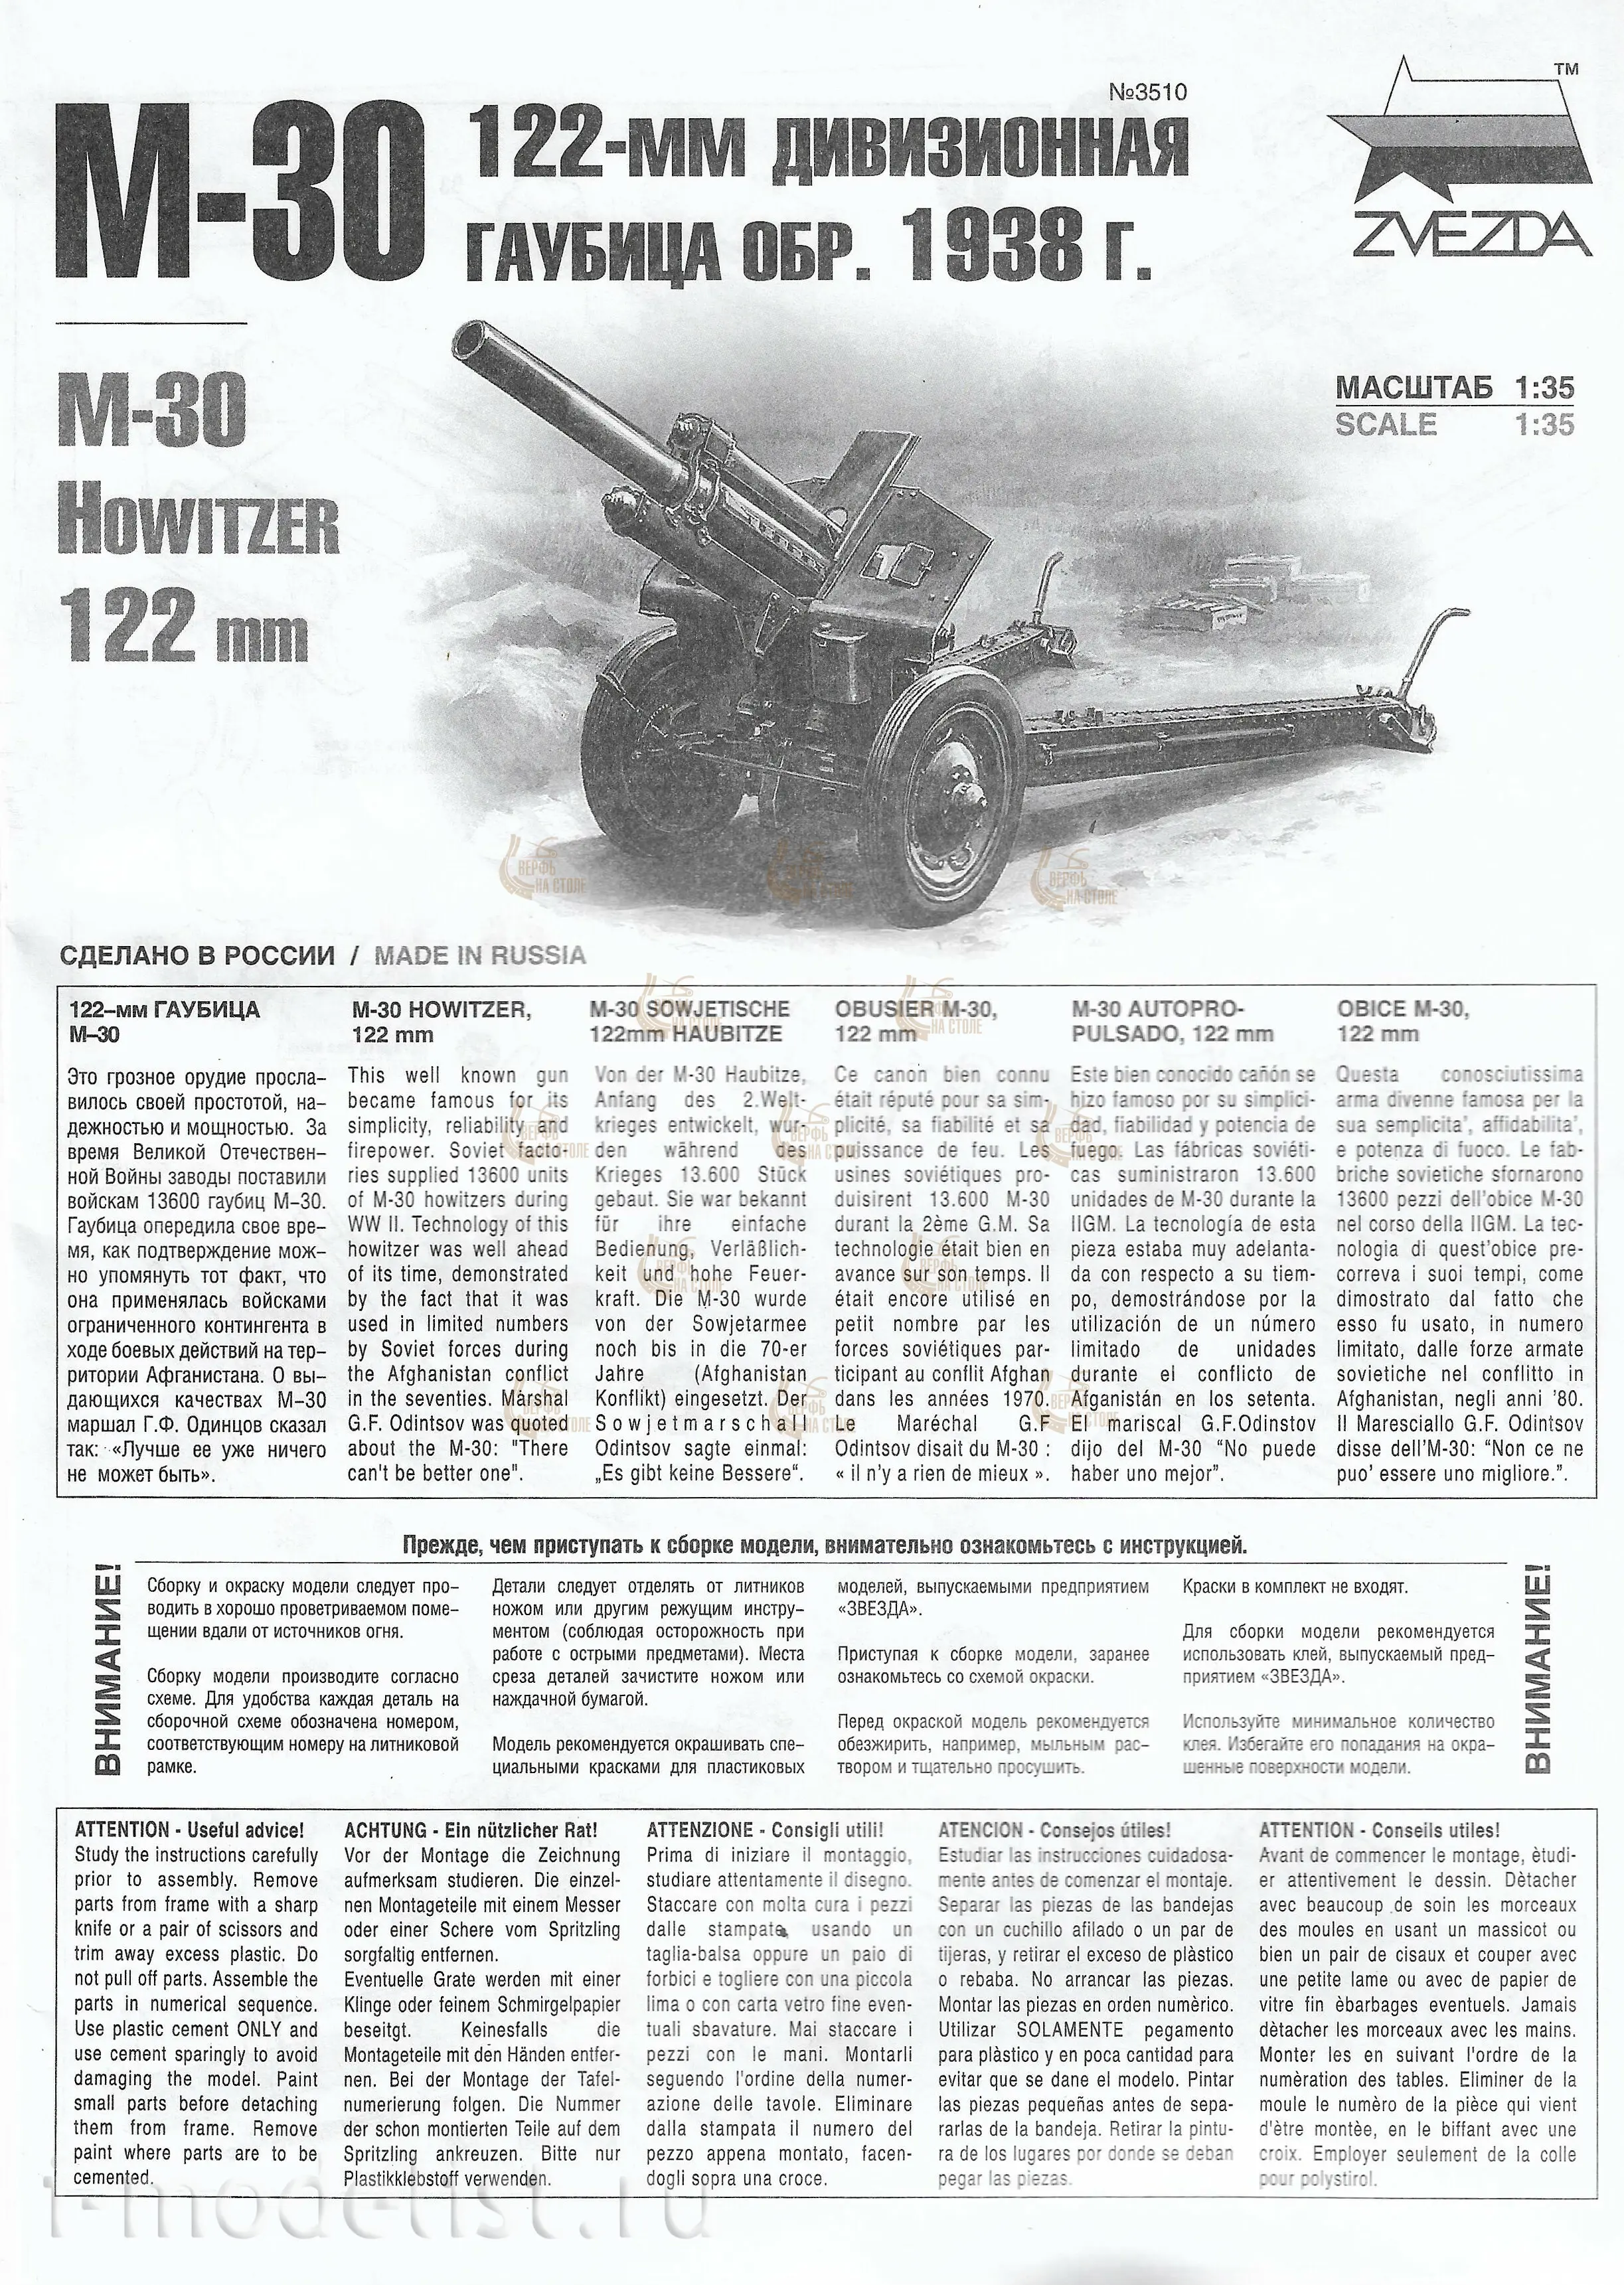 Советская 122-мм дивизионная гаубица М-30